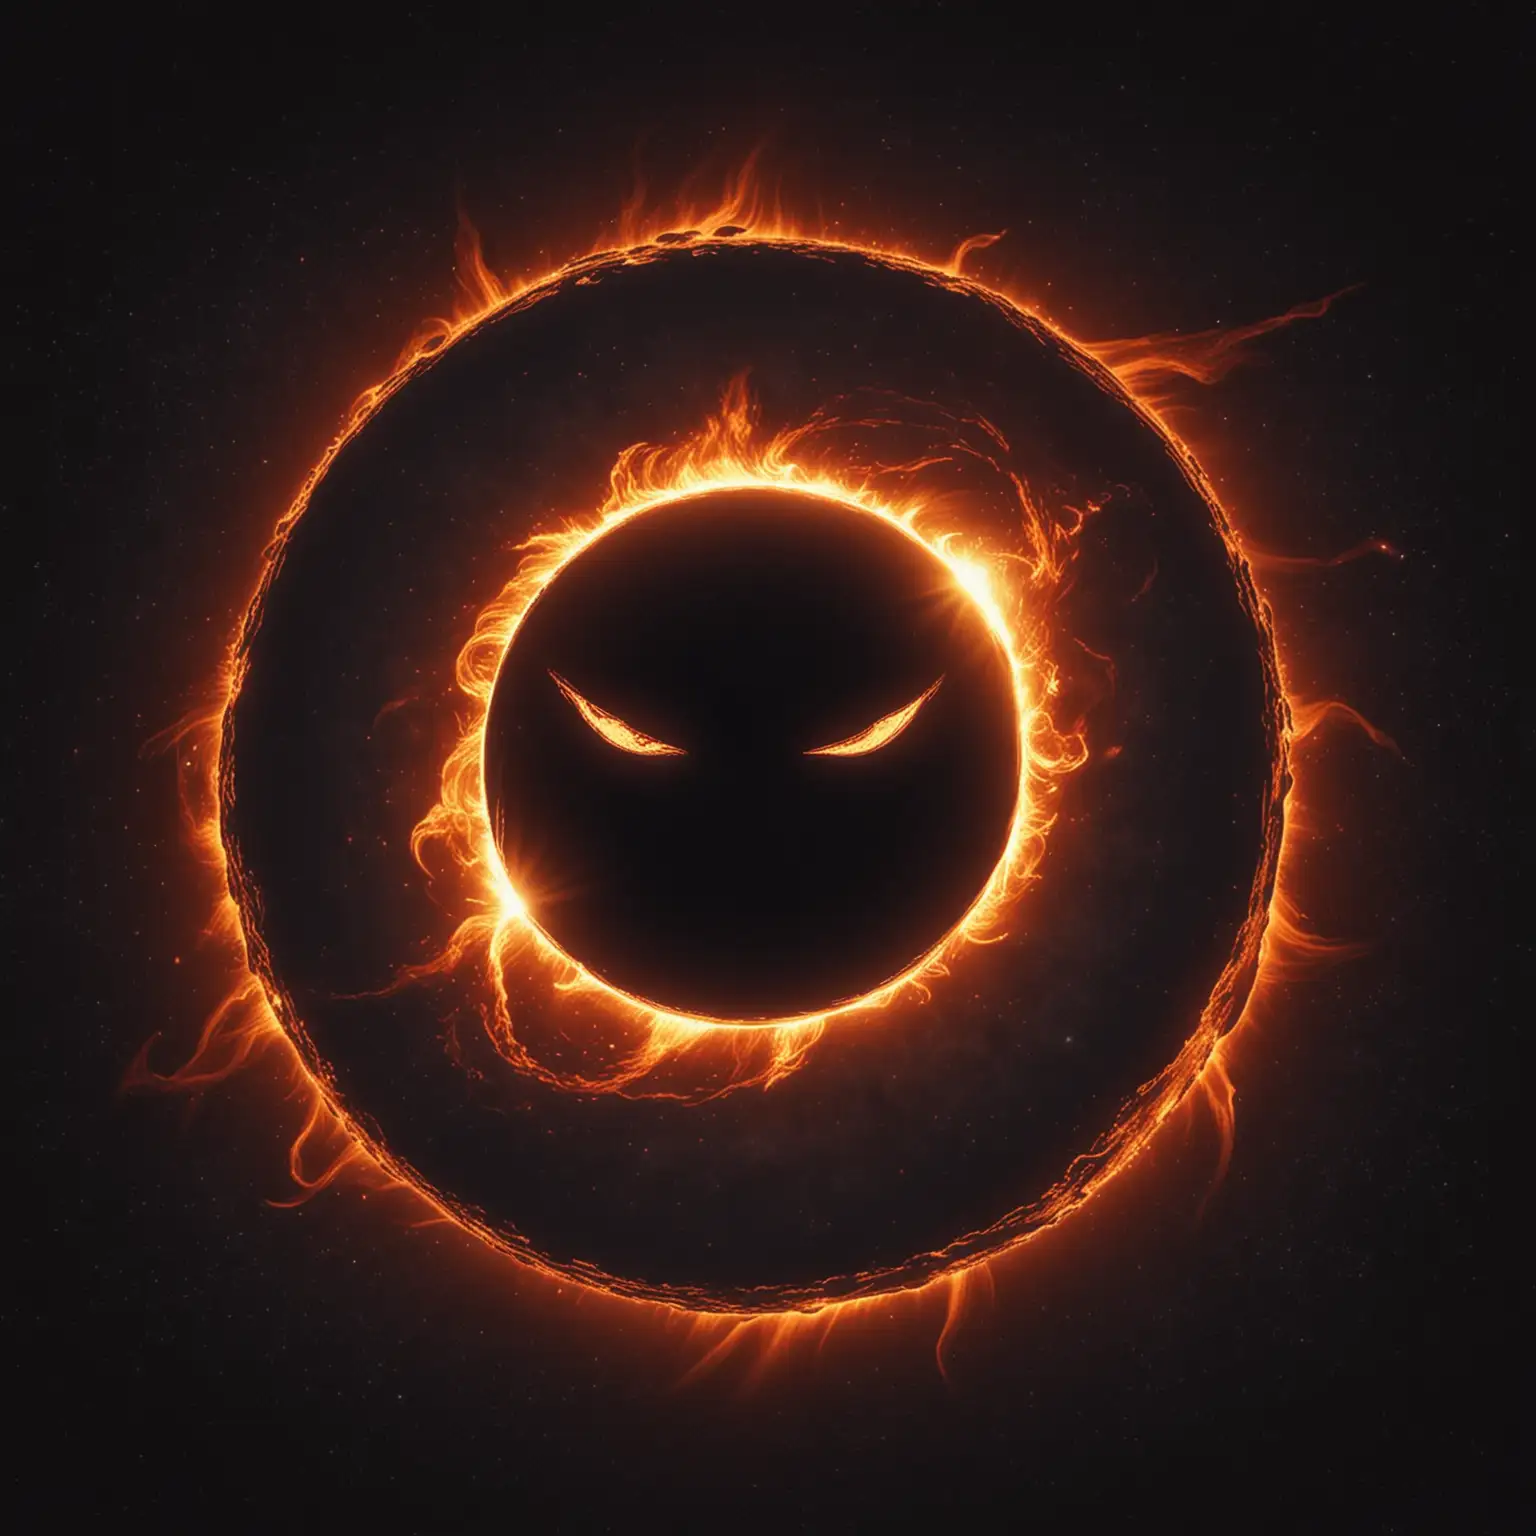 Mystical Solar Eclipse Emblem in a Fantasy Realm